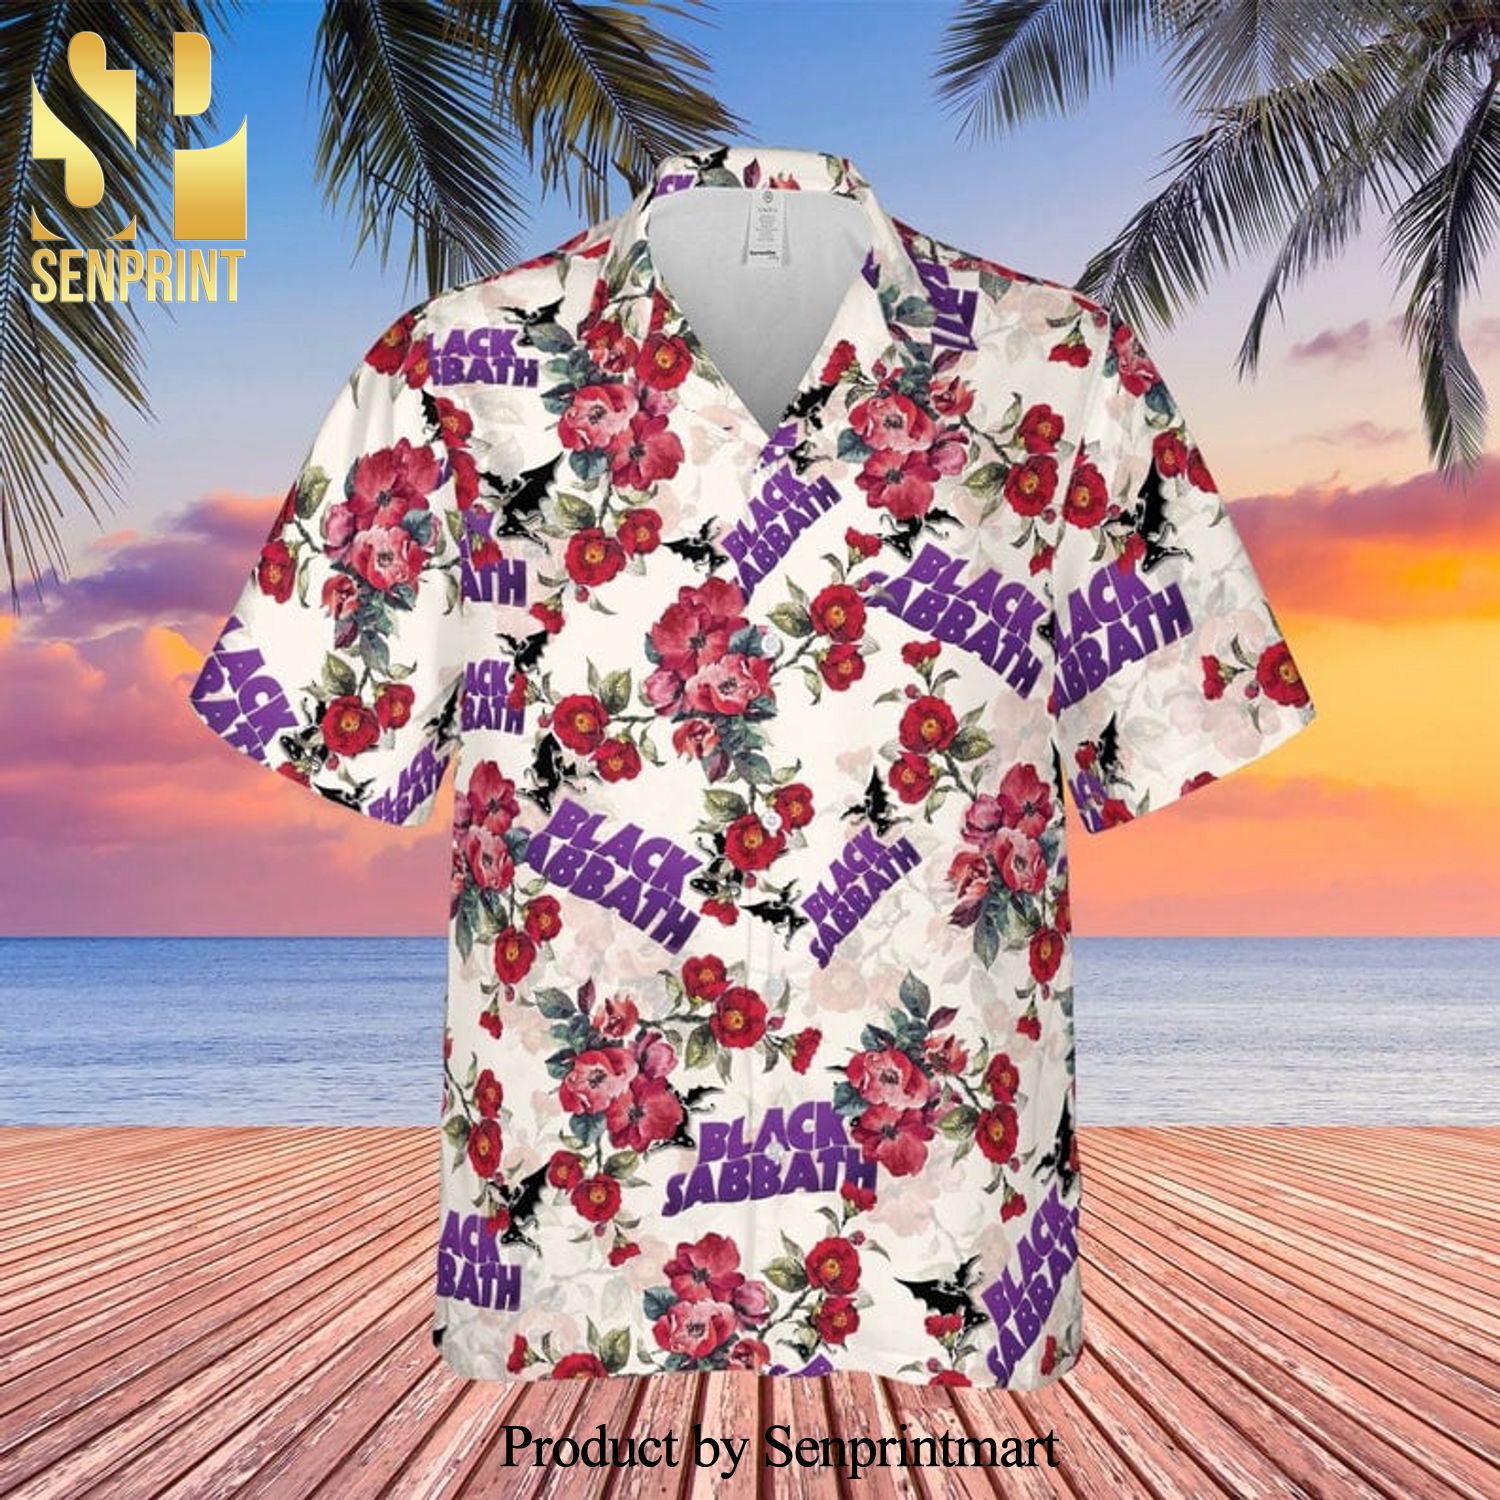 Black Sabbath Rock Band And Floral Pattern Full Printing Hawaiian Shirt – White